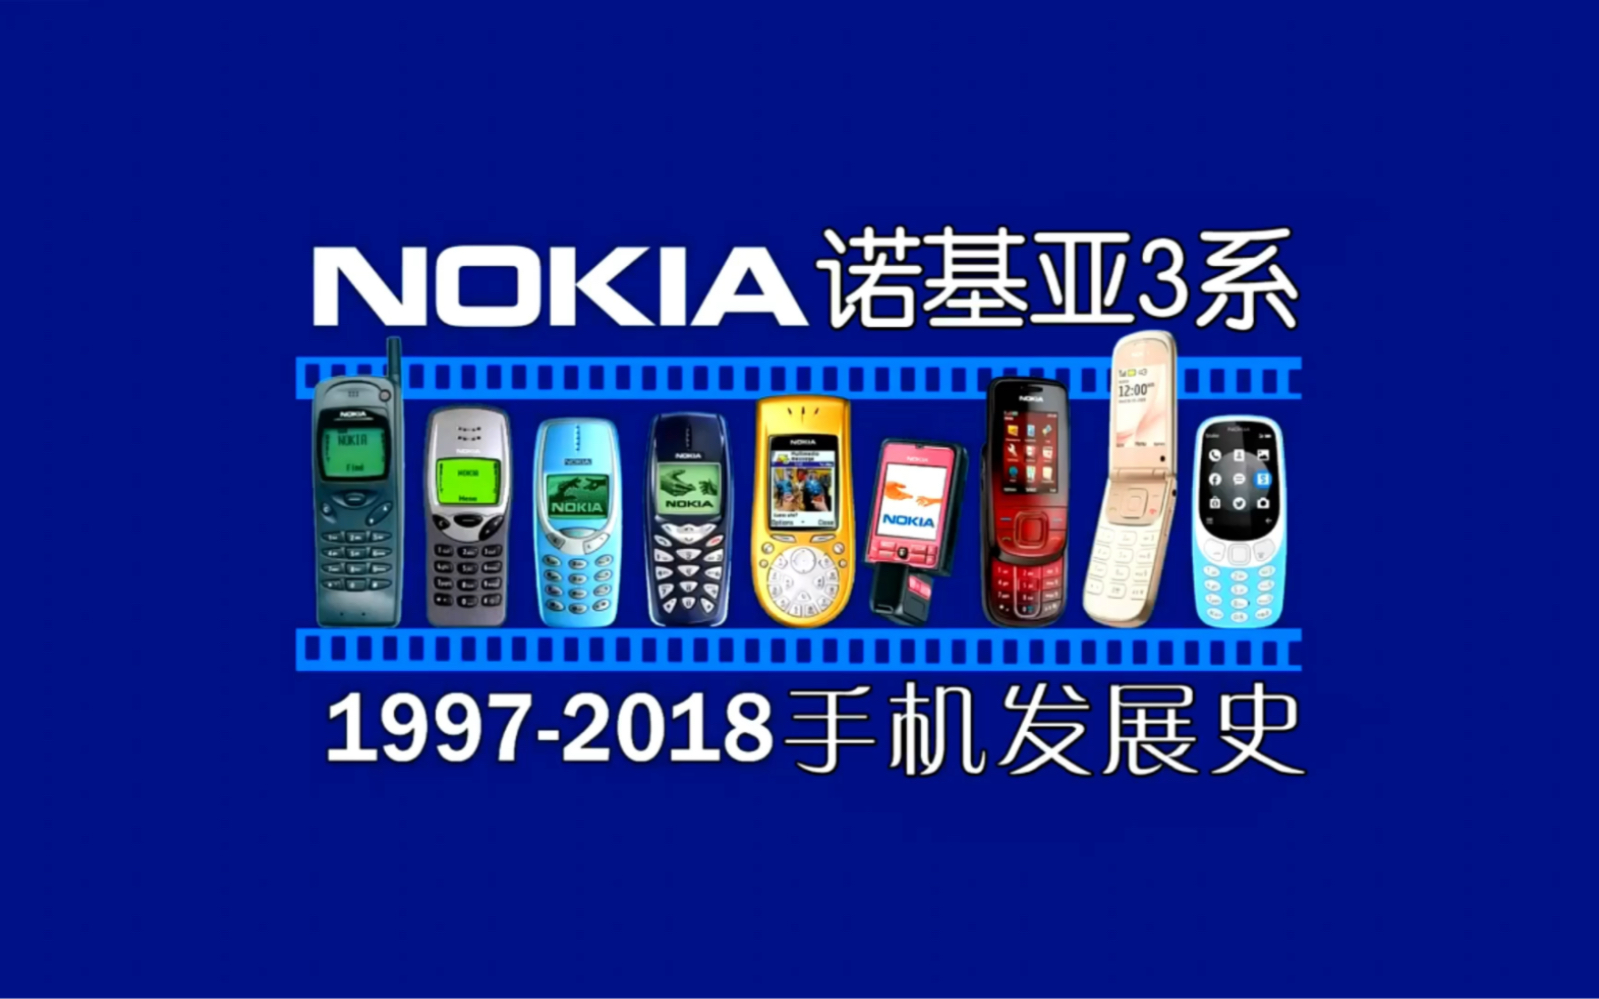 诺基亚 Nokia 3系列手机发展史